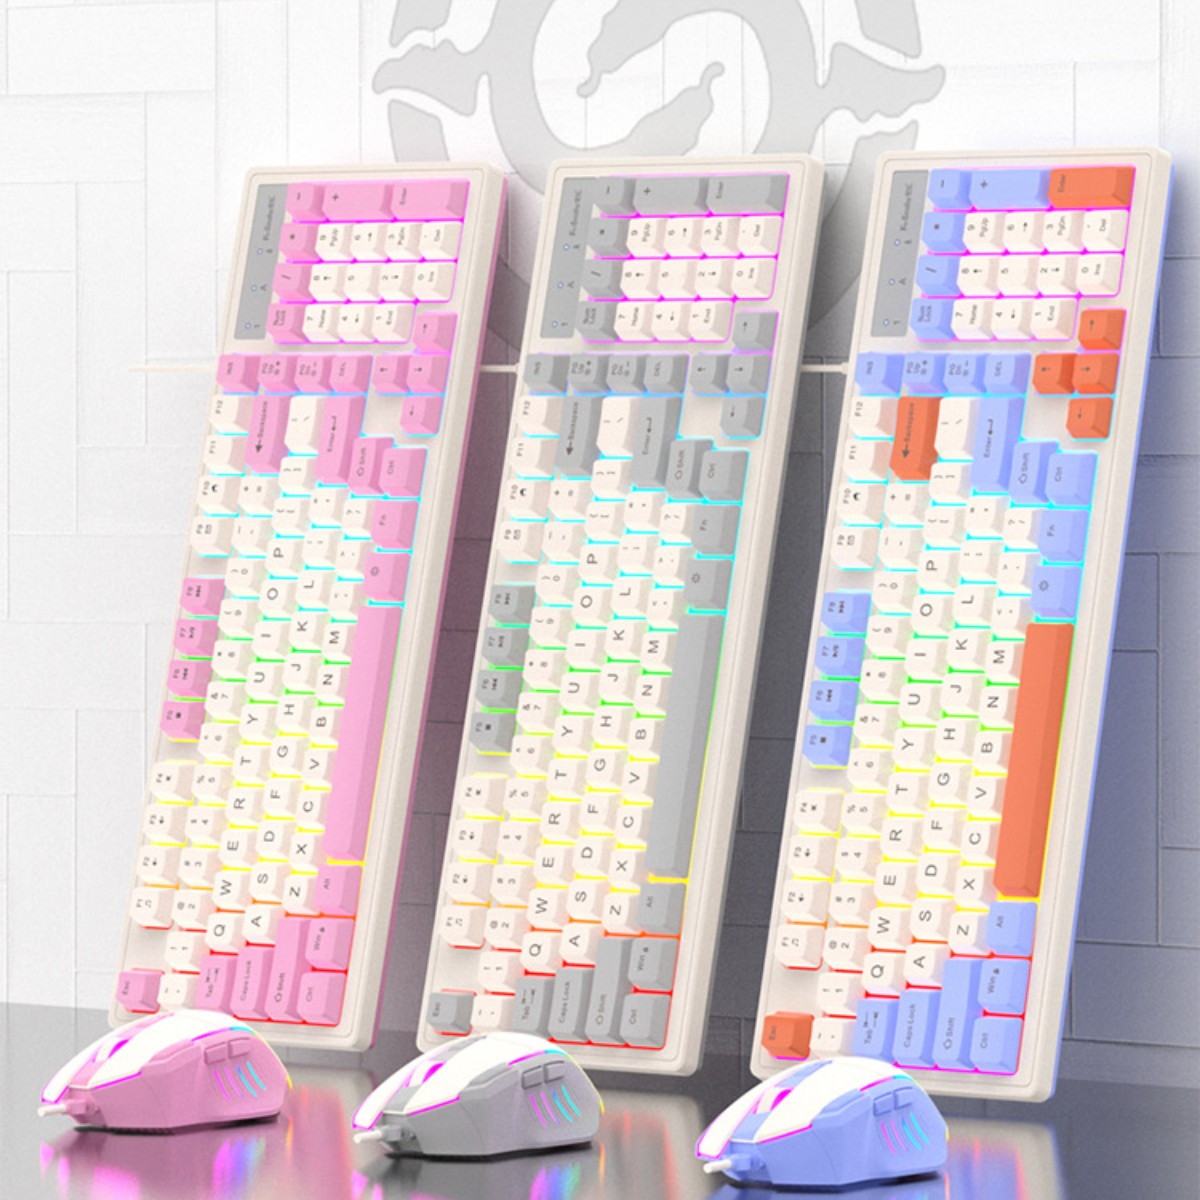 98 Desktop-Computer-Notebook, Verkabelte Maus-Set und Tastatur Maus, und Grau Gefühl SHAOKE mechanisches Tasten Gaming-Tastatur